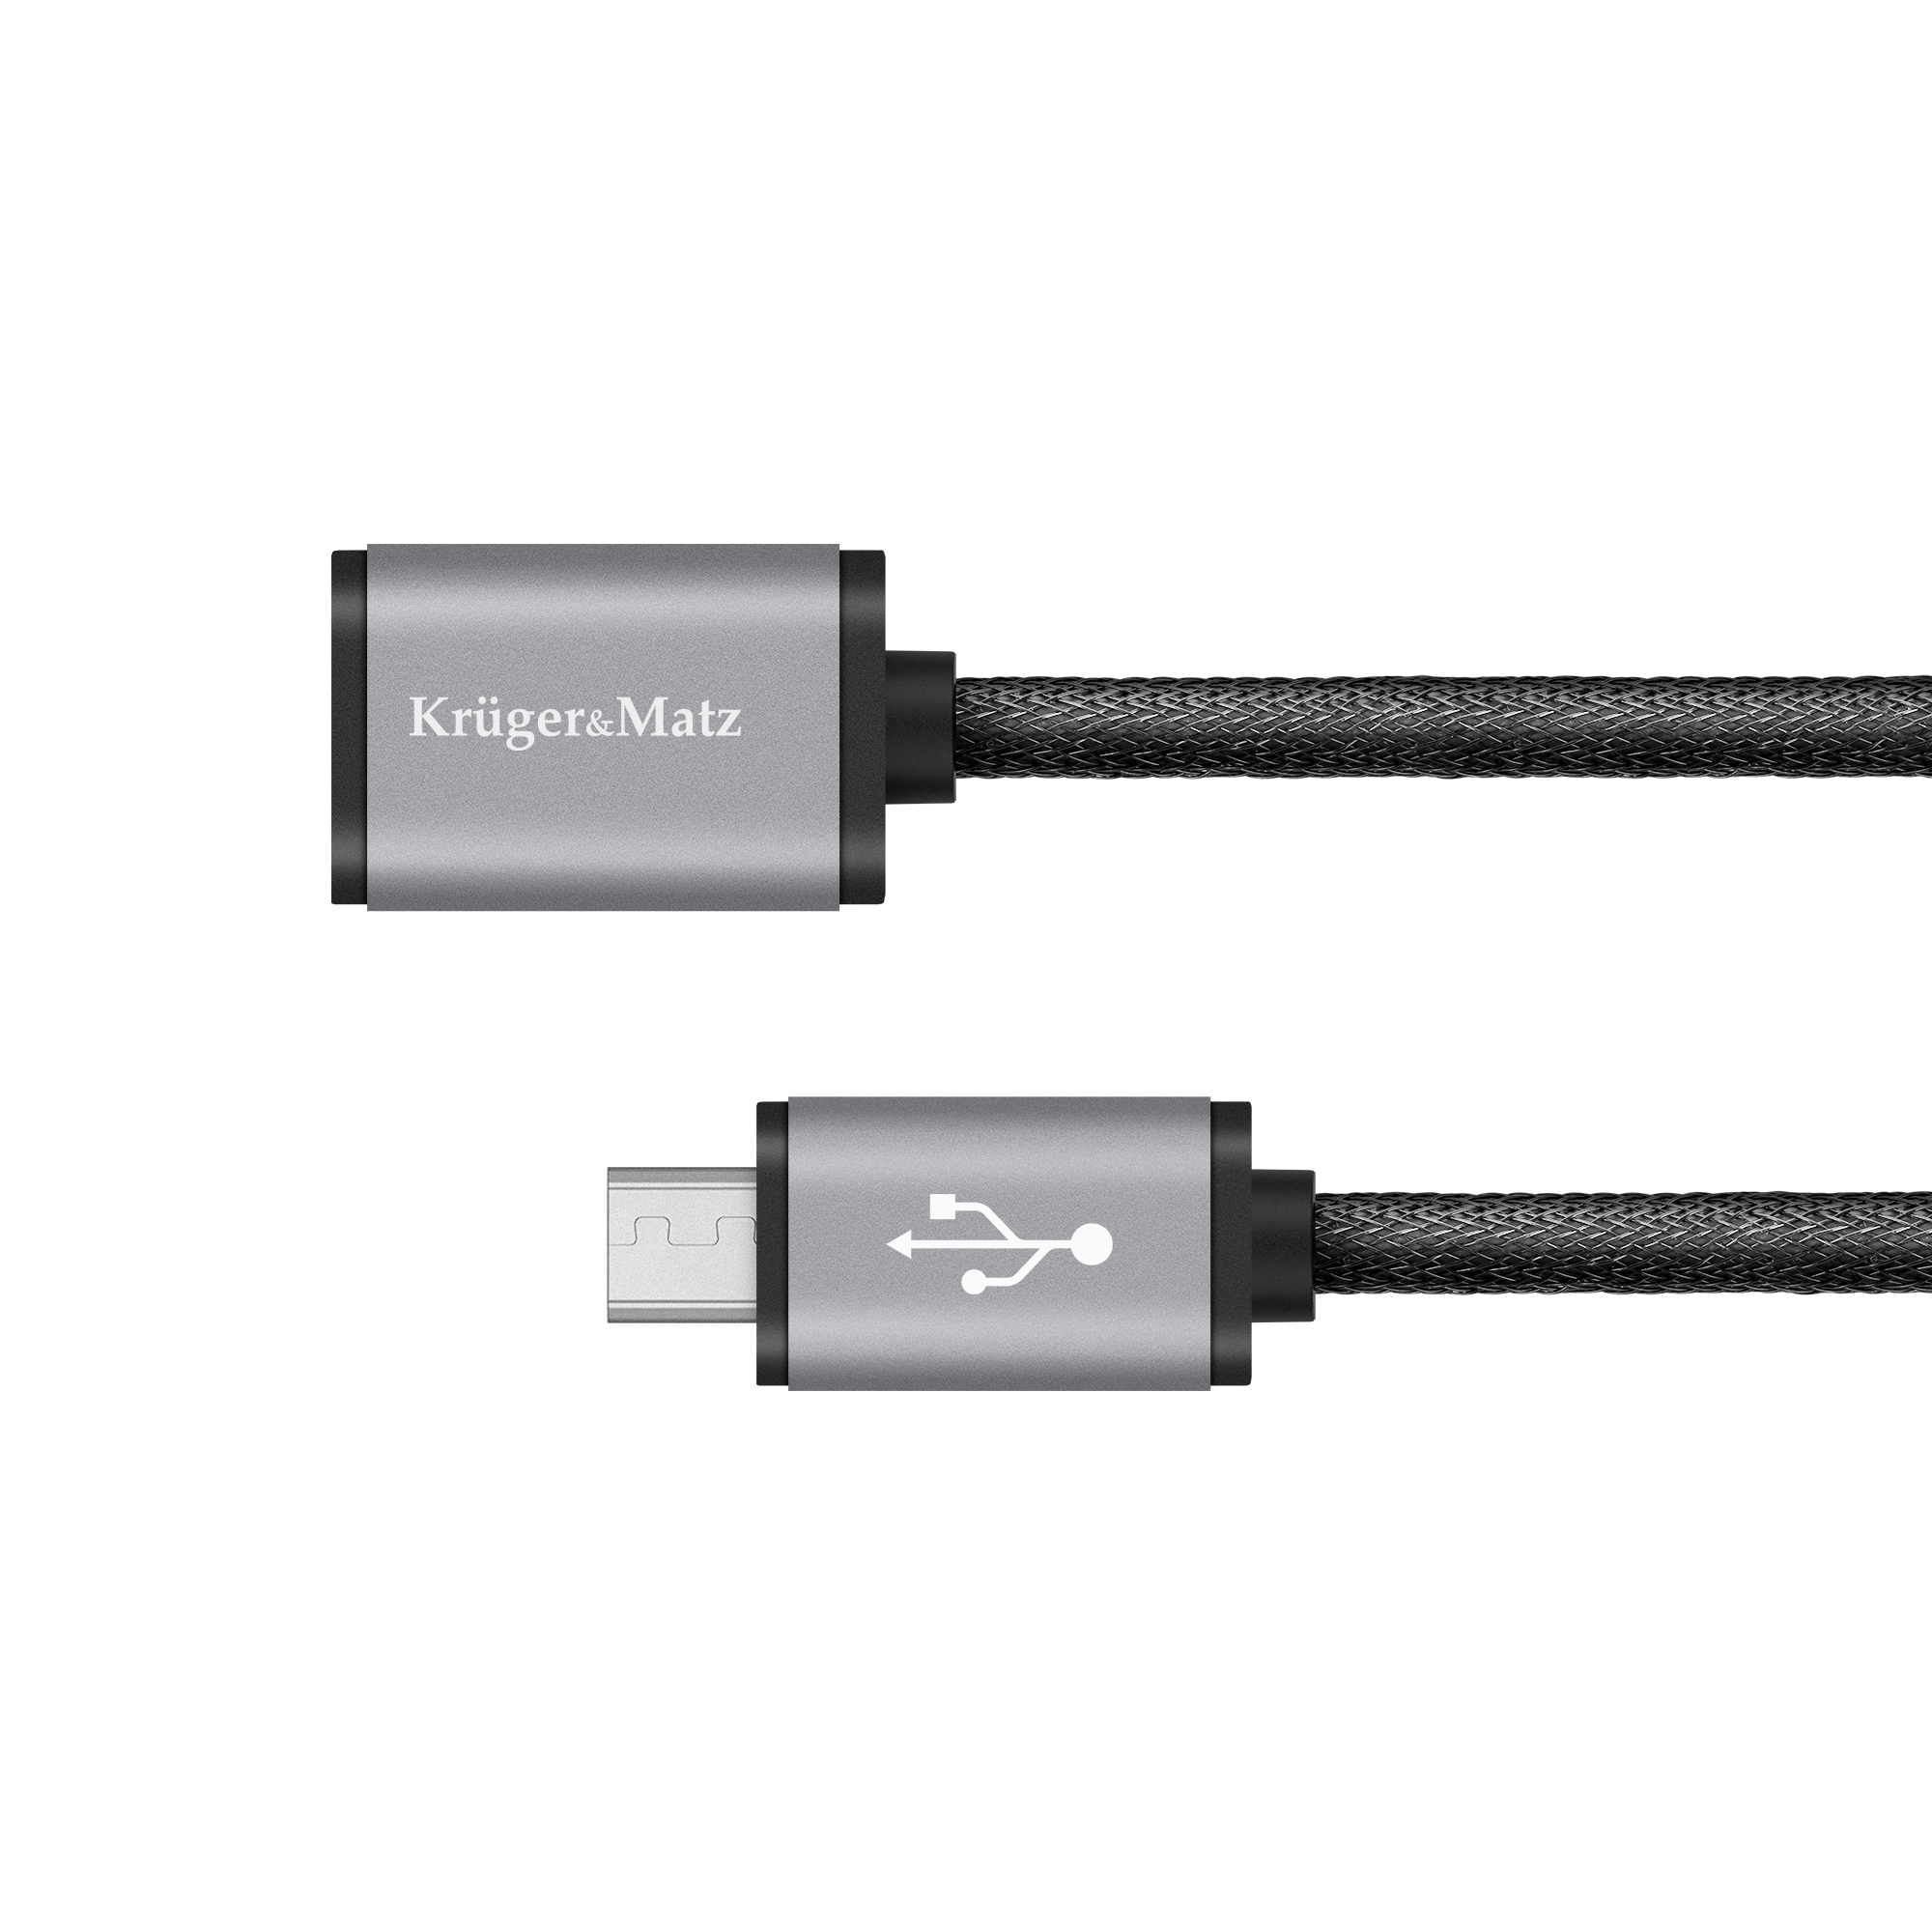 LEC-KM0332--Wysoka jakość tworzyw, z jakich powstają kable USB marki Kruger&amp;amp;Matz sprawiają, że są one bardzo trwałe. Żyły gł&amp;oacute;wne wykonane z czystej miedzi zapewnią wysoką jakość przewodzenia, umożliwiając przesyłanie danych pomiędzy ur